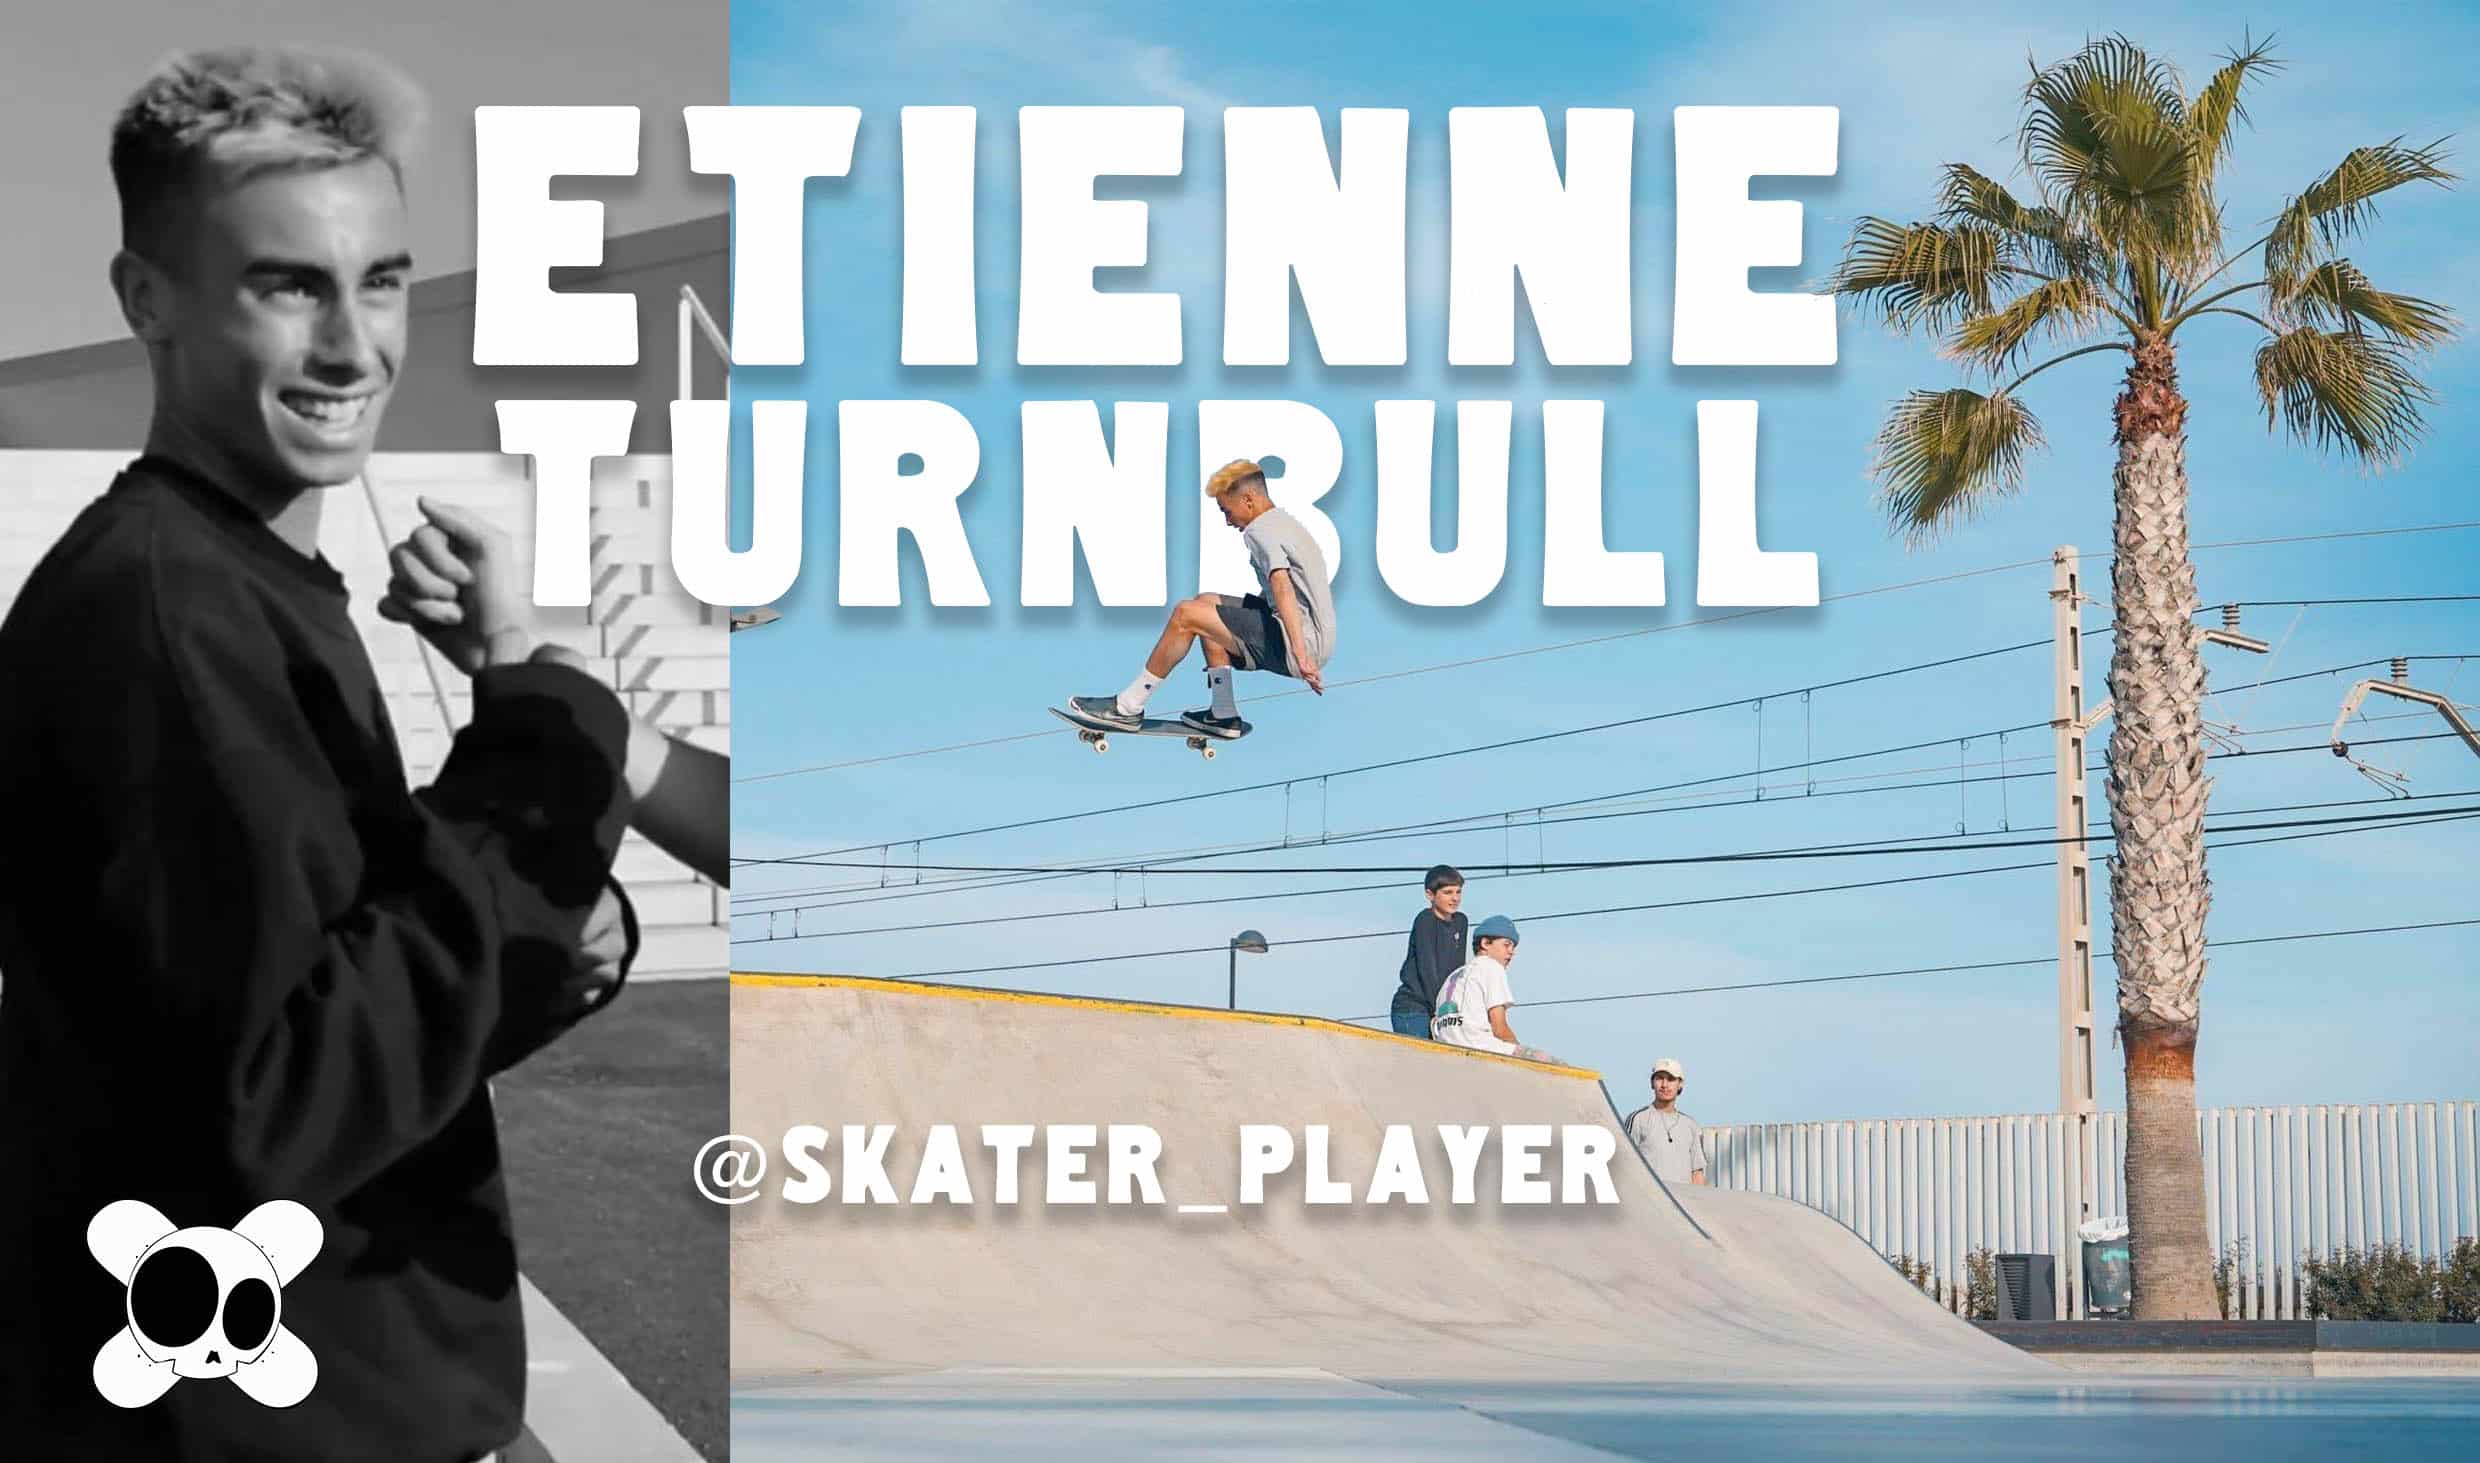 https://oldskullzskateboard.fr/etienne-turnbull-skater-player-interview/